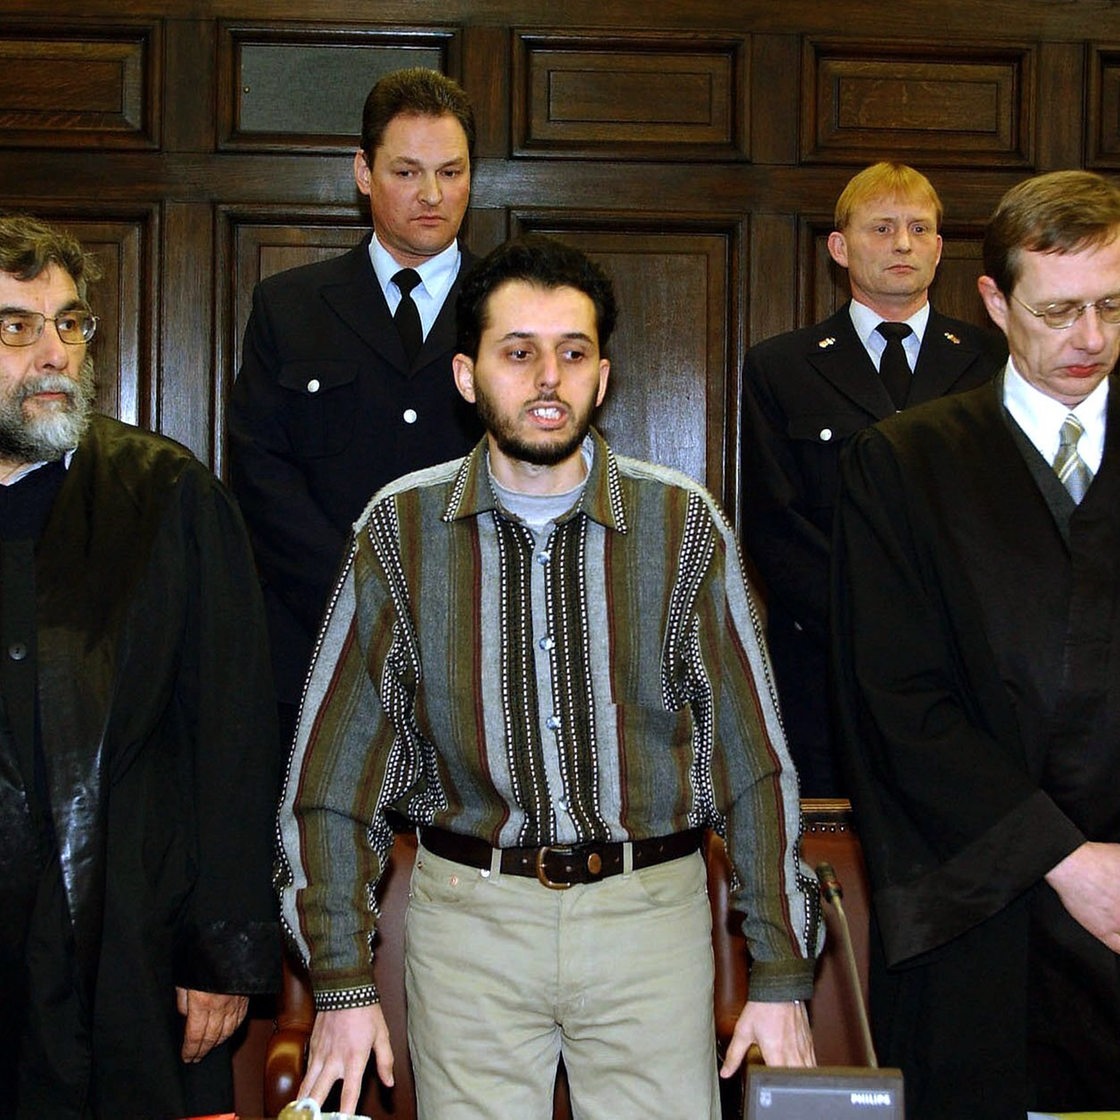 Der Angeklagte Mounir El Motassadeq steht vor der Urteilverkündung am 19.2.2002 im Verhandlungssaal des Landgerichts in Hamburg zwischen seinen Verteidigern Hartmut Jacobi (l) und Hans Leistritz (r).